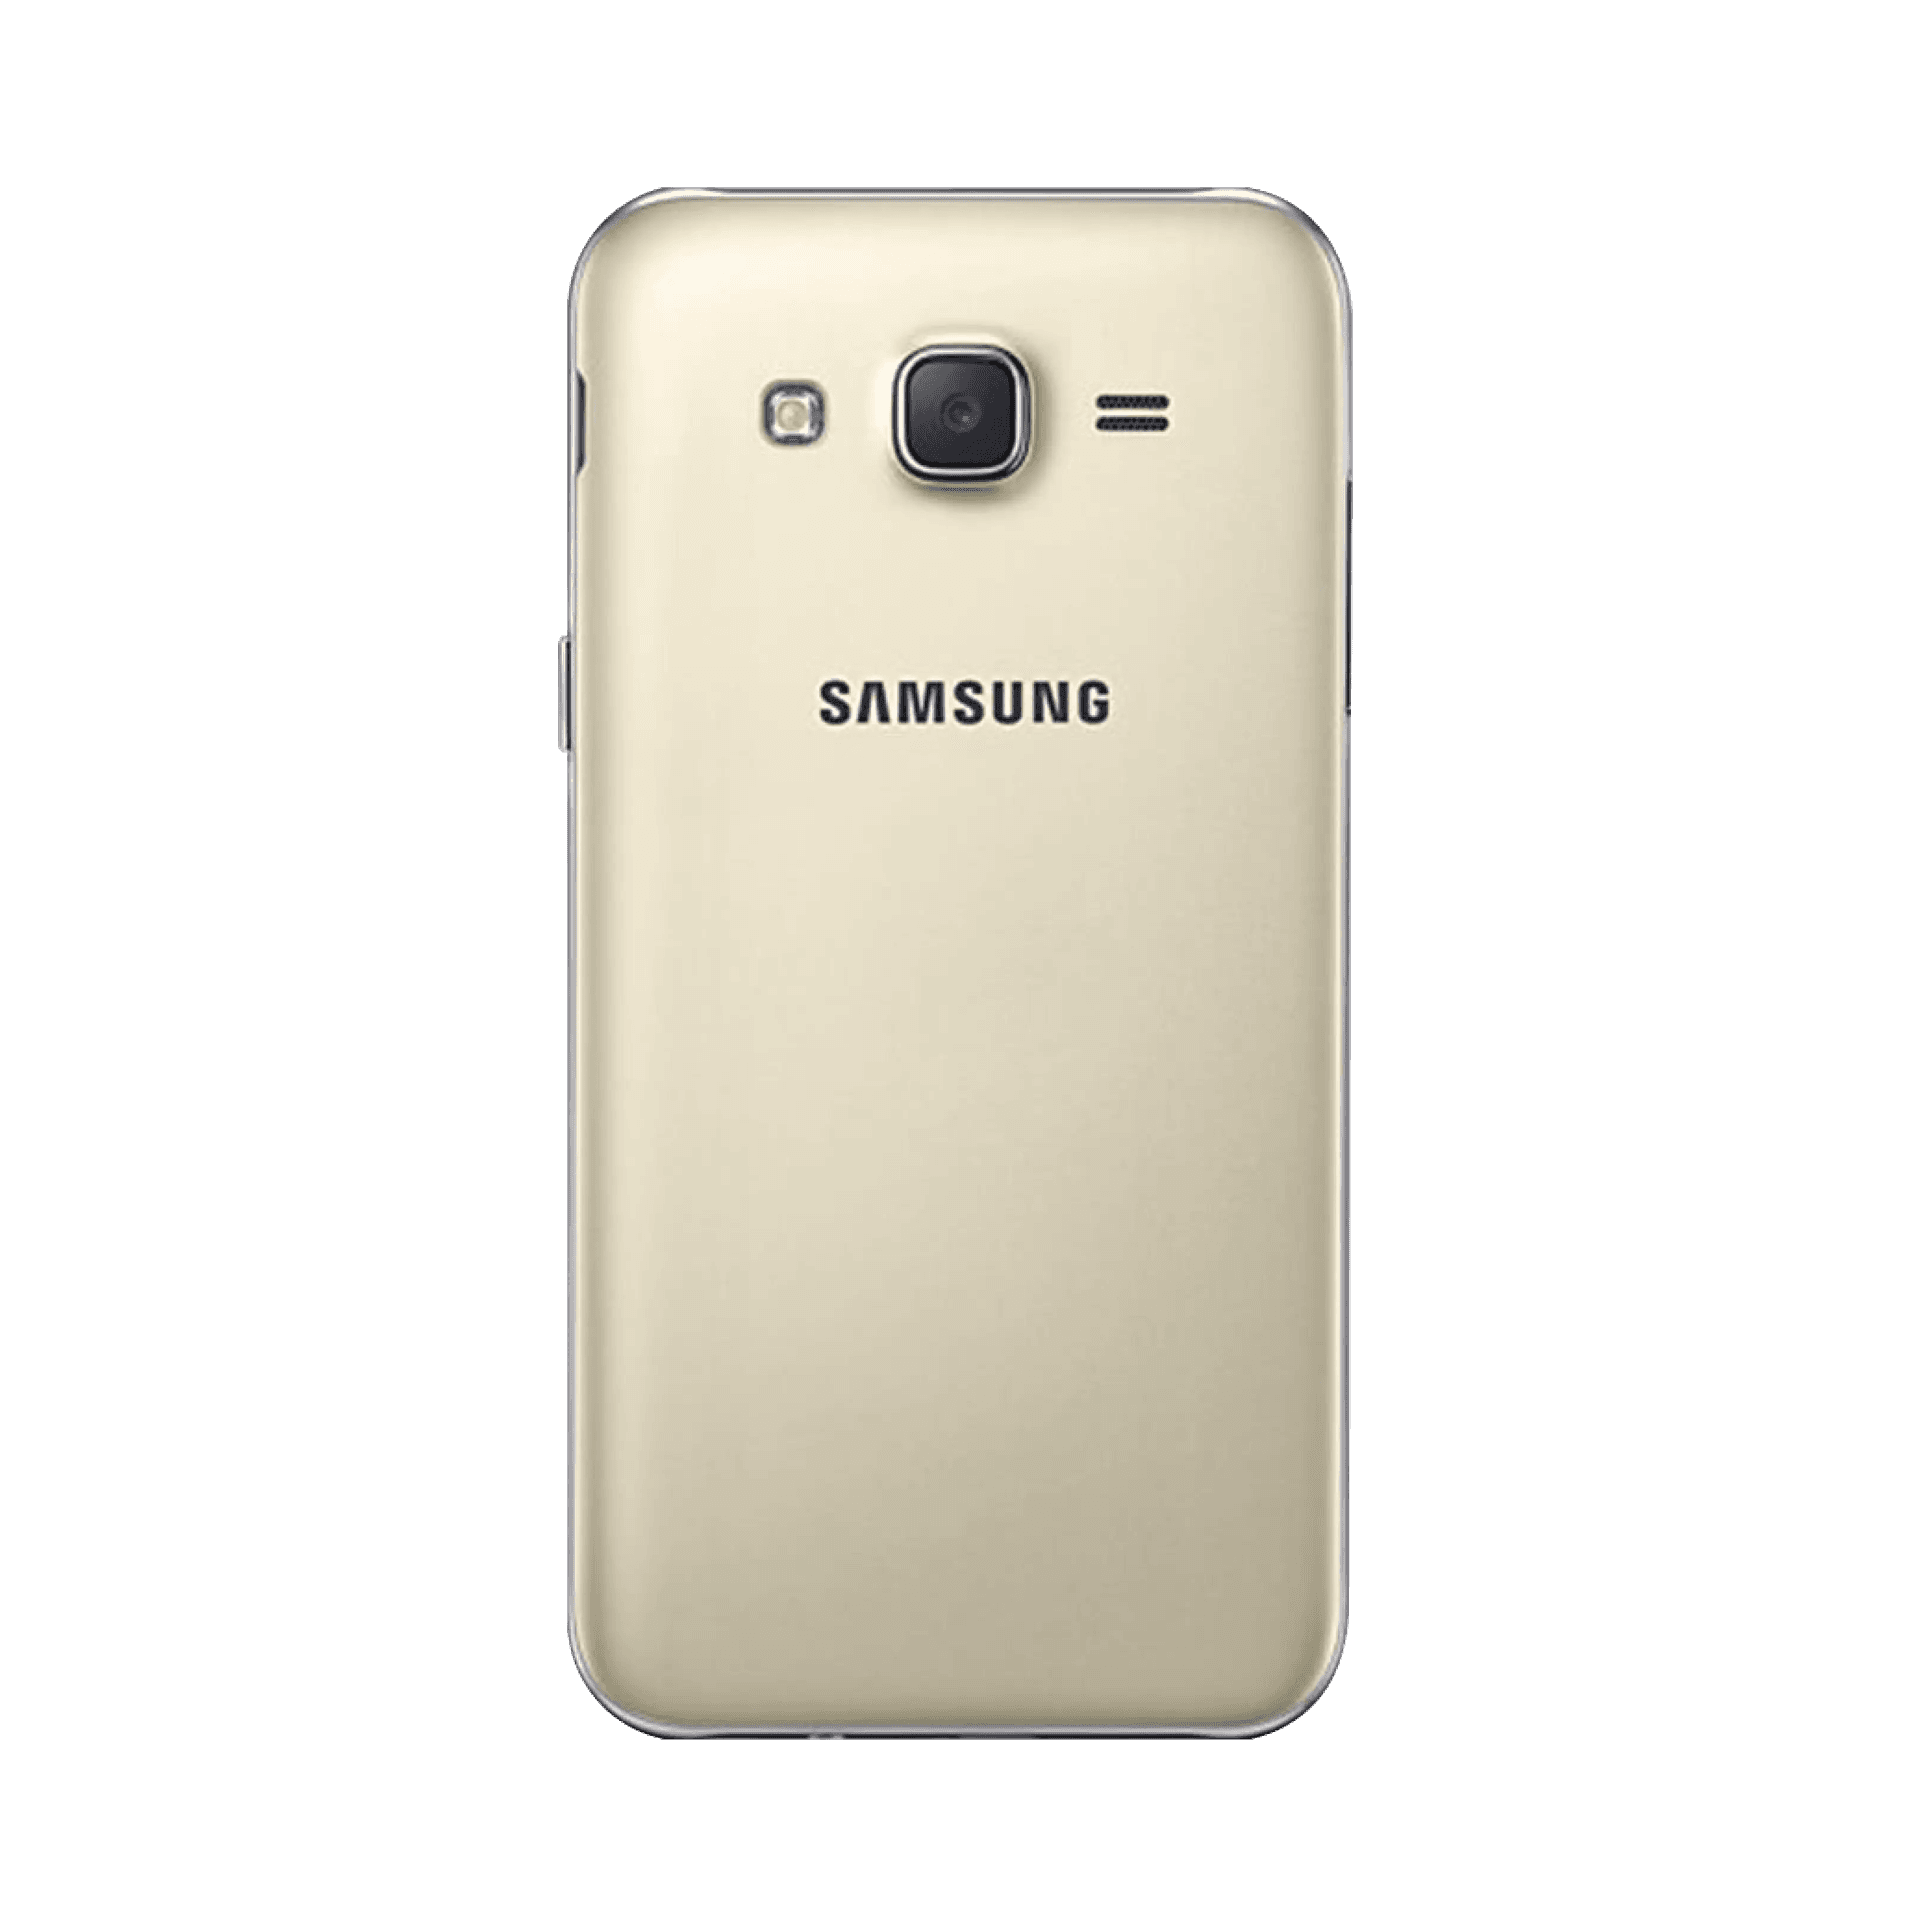 Samsung Galaxy J5 2015 - 8 GB - Altın